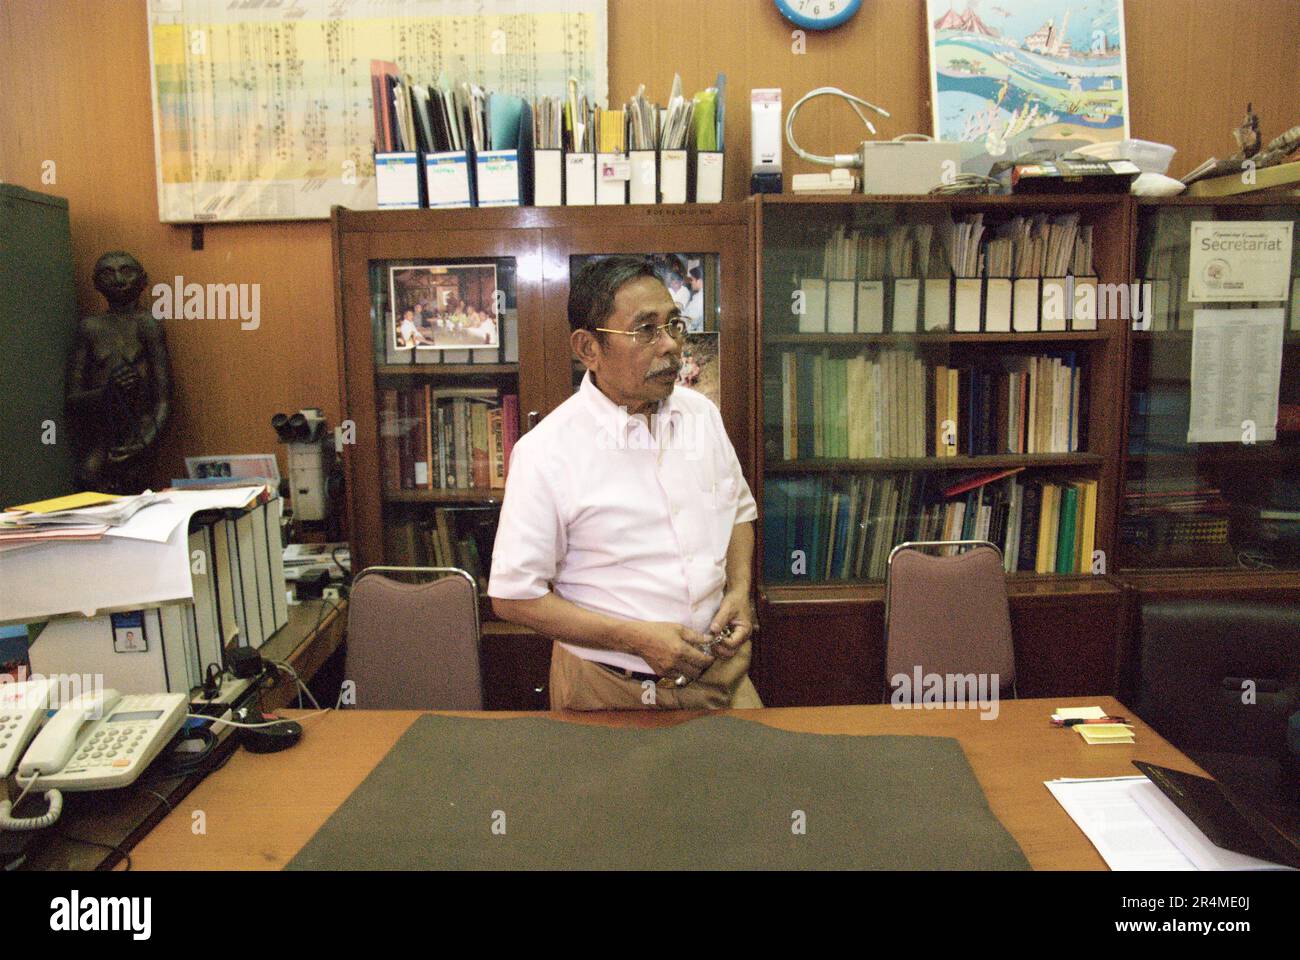 Fachroel Aziz, professeur de recherche en paléontologie des vertébrés, est photographié au bureau de la recherche sur les vertébrés, à l'Agence géologique du Ministère indonésien de l'énergie et des ressources minérales, situé à Bandung, à Java Ouest, en Indonésie. Banque D'Images